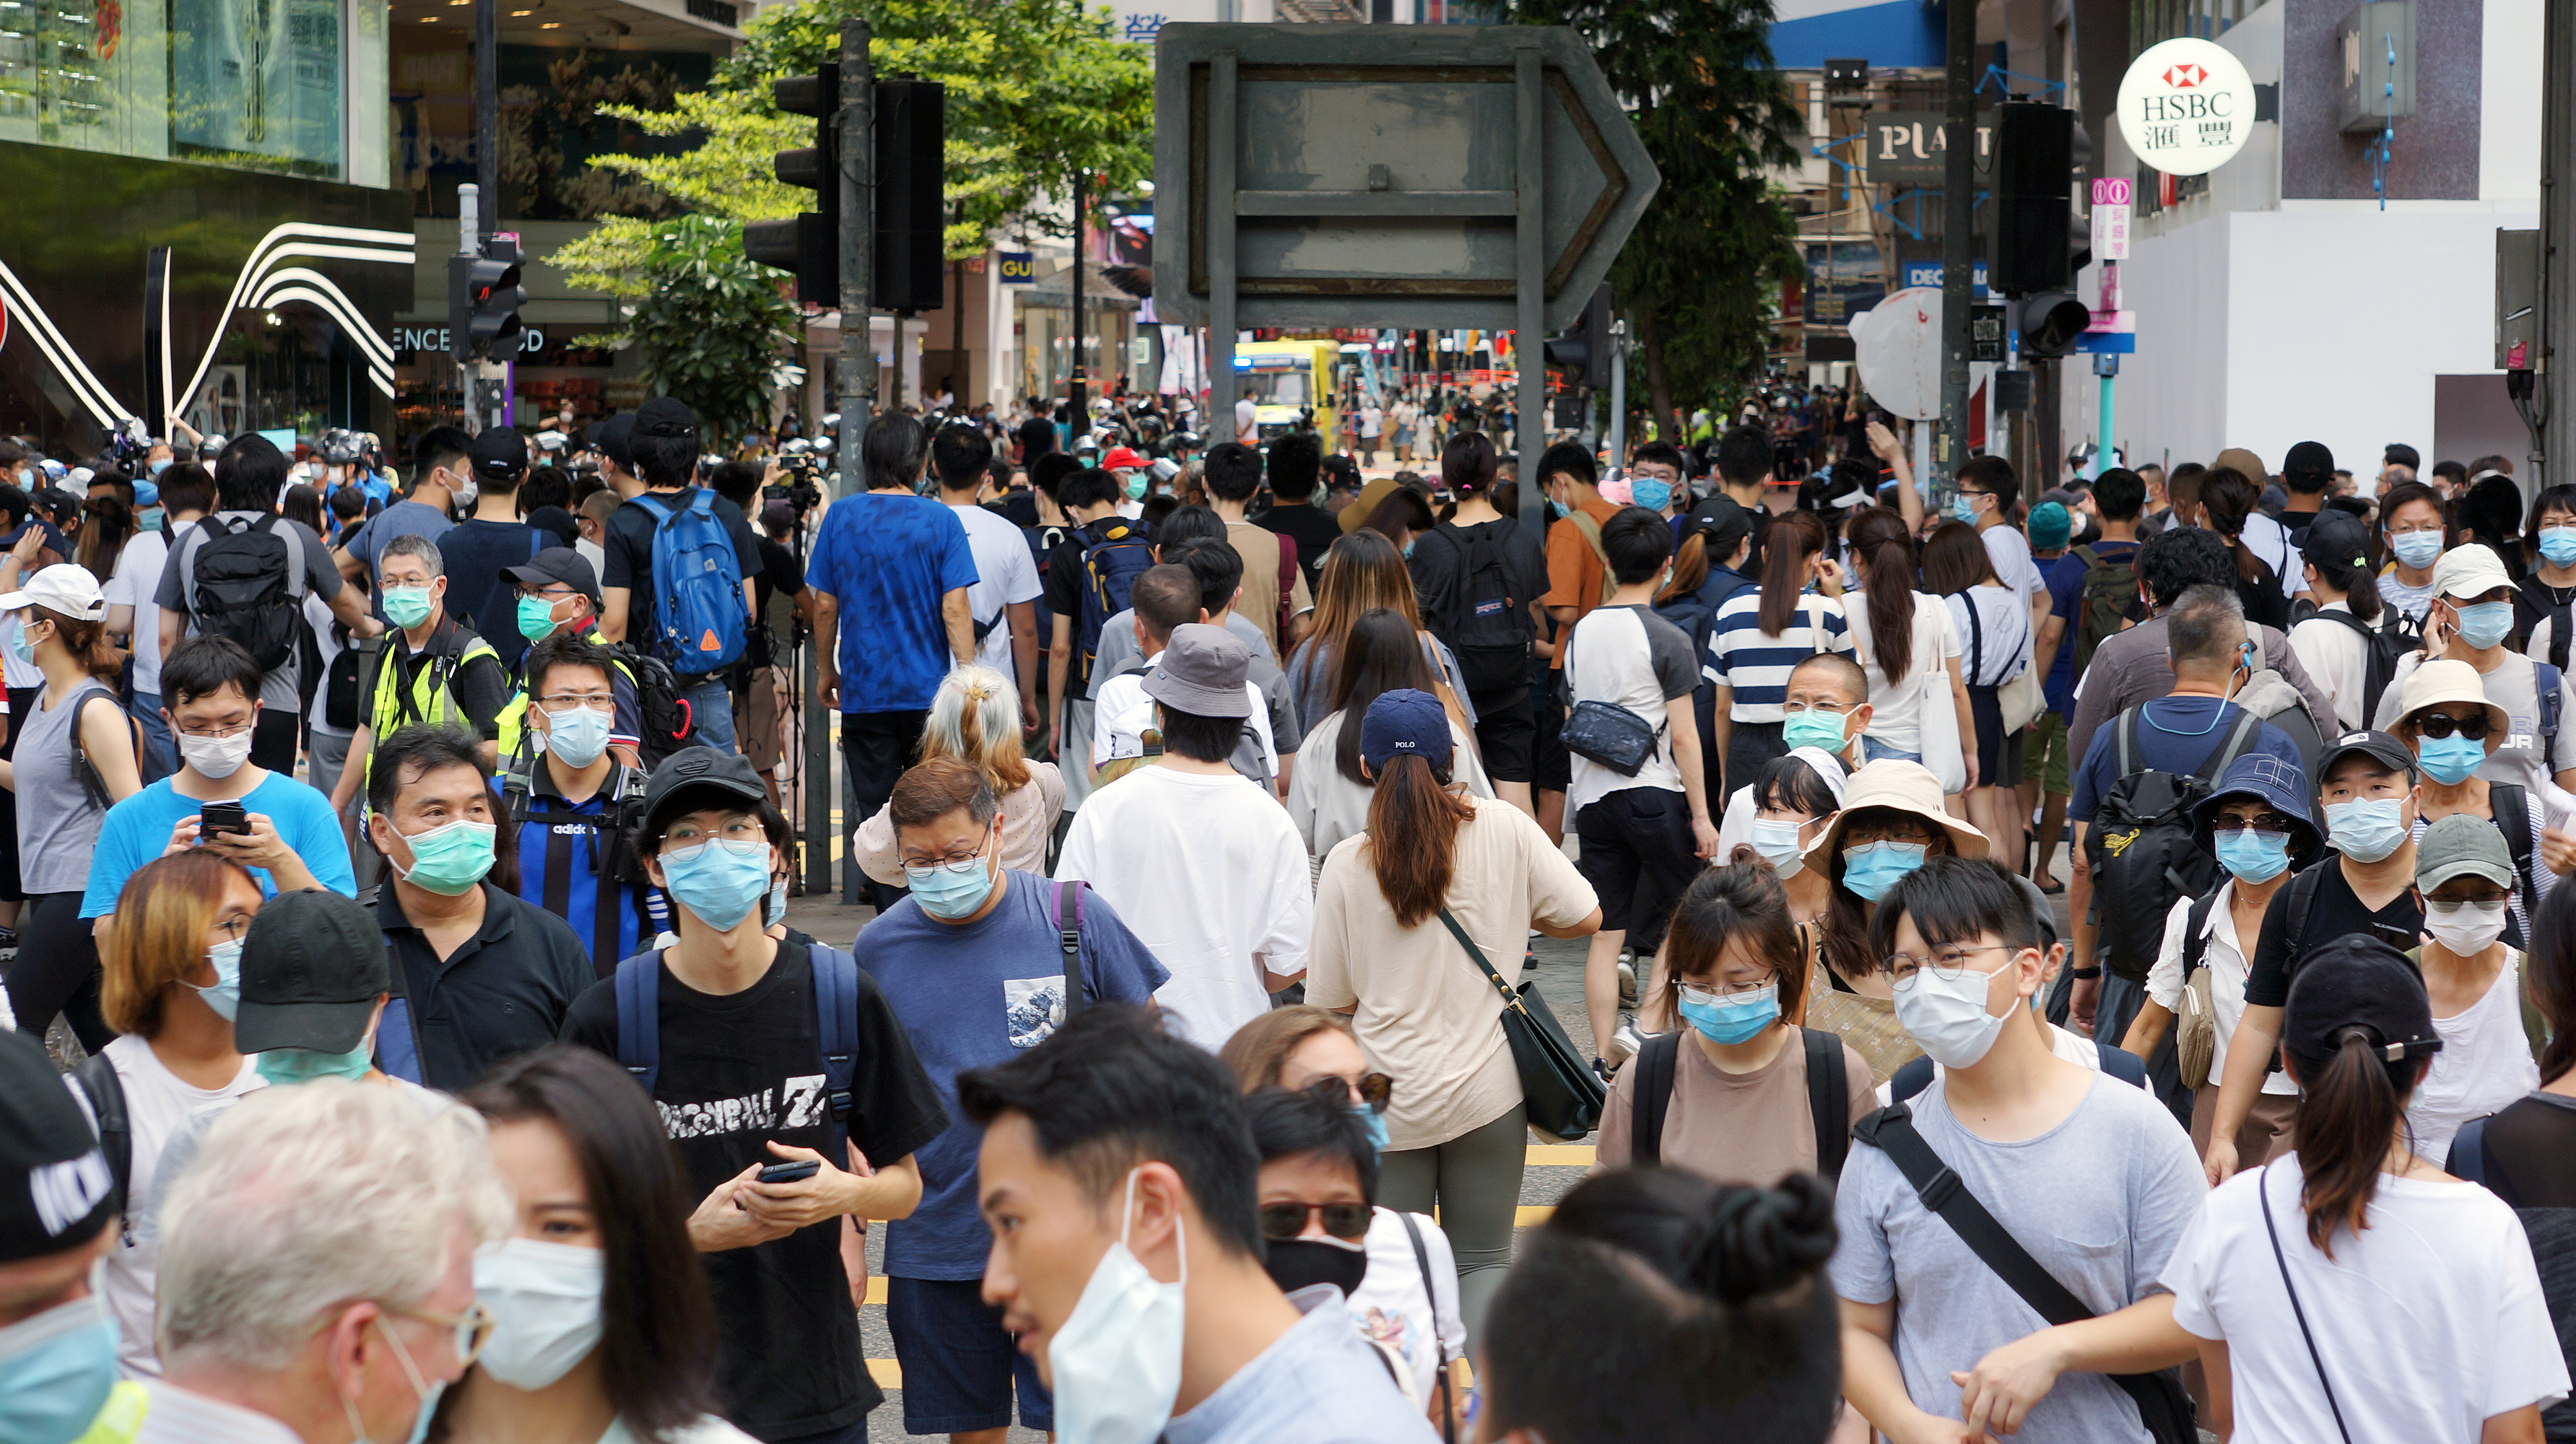 「香港国家安全維持法」施行、それでも起こった抗議活動